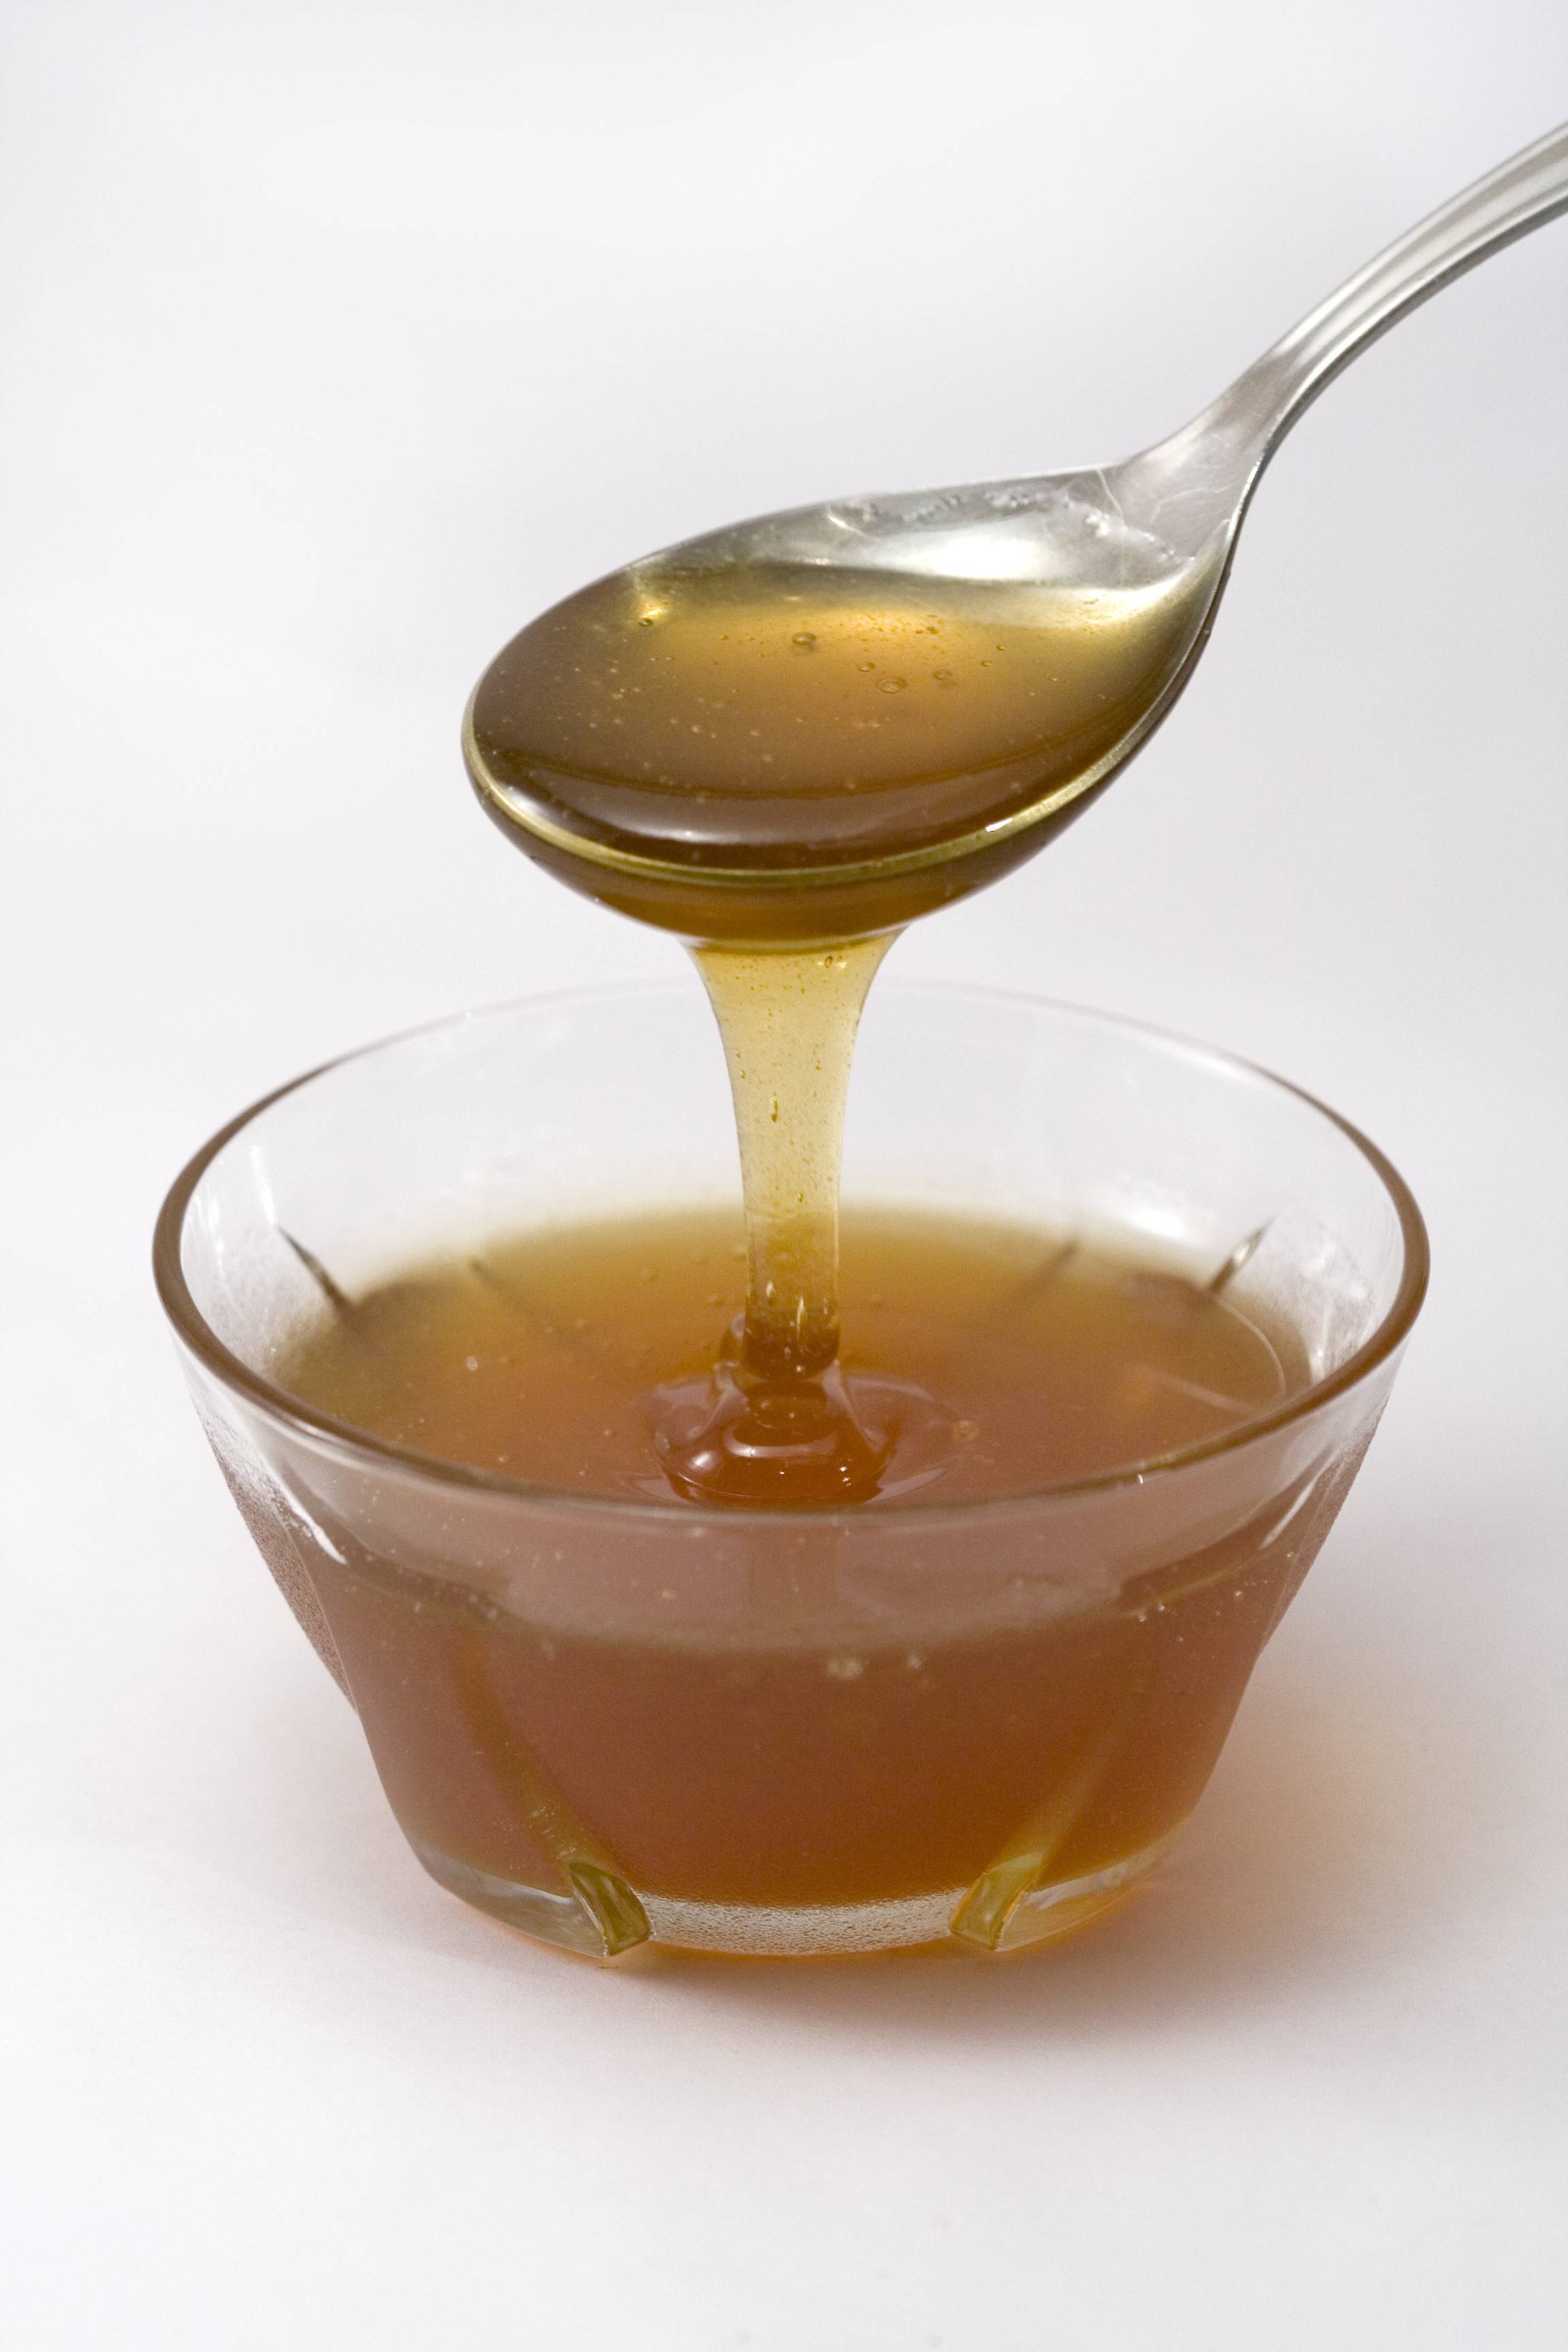 Мед с прополисом: полезные свойства, как принимать, рецепты приготовления